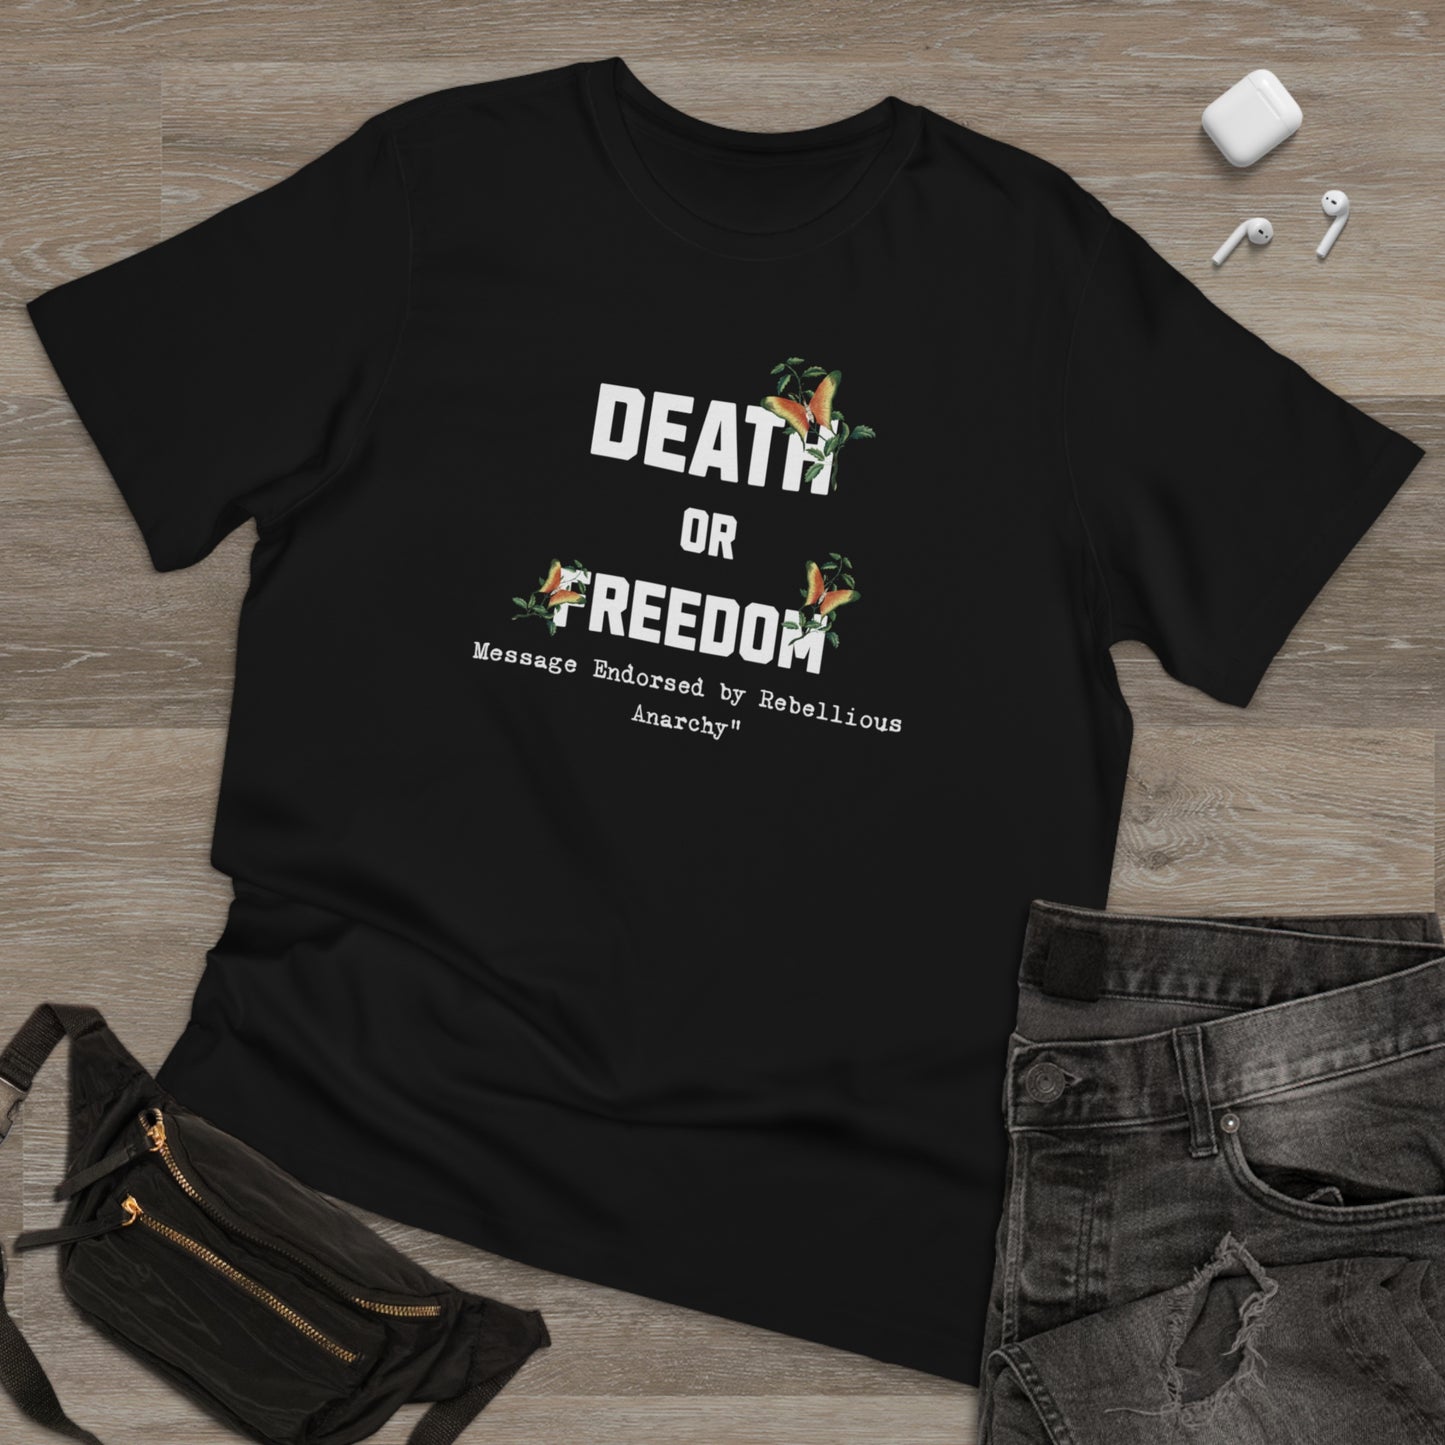 FOD: Freedom Or Death